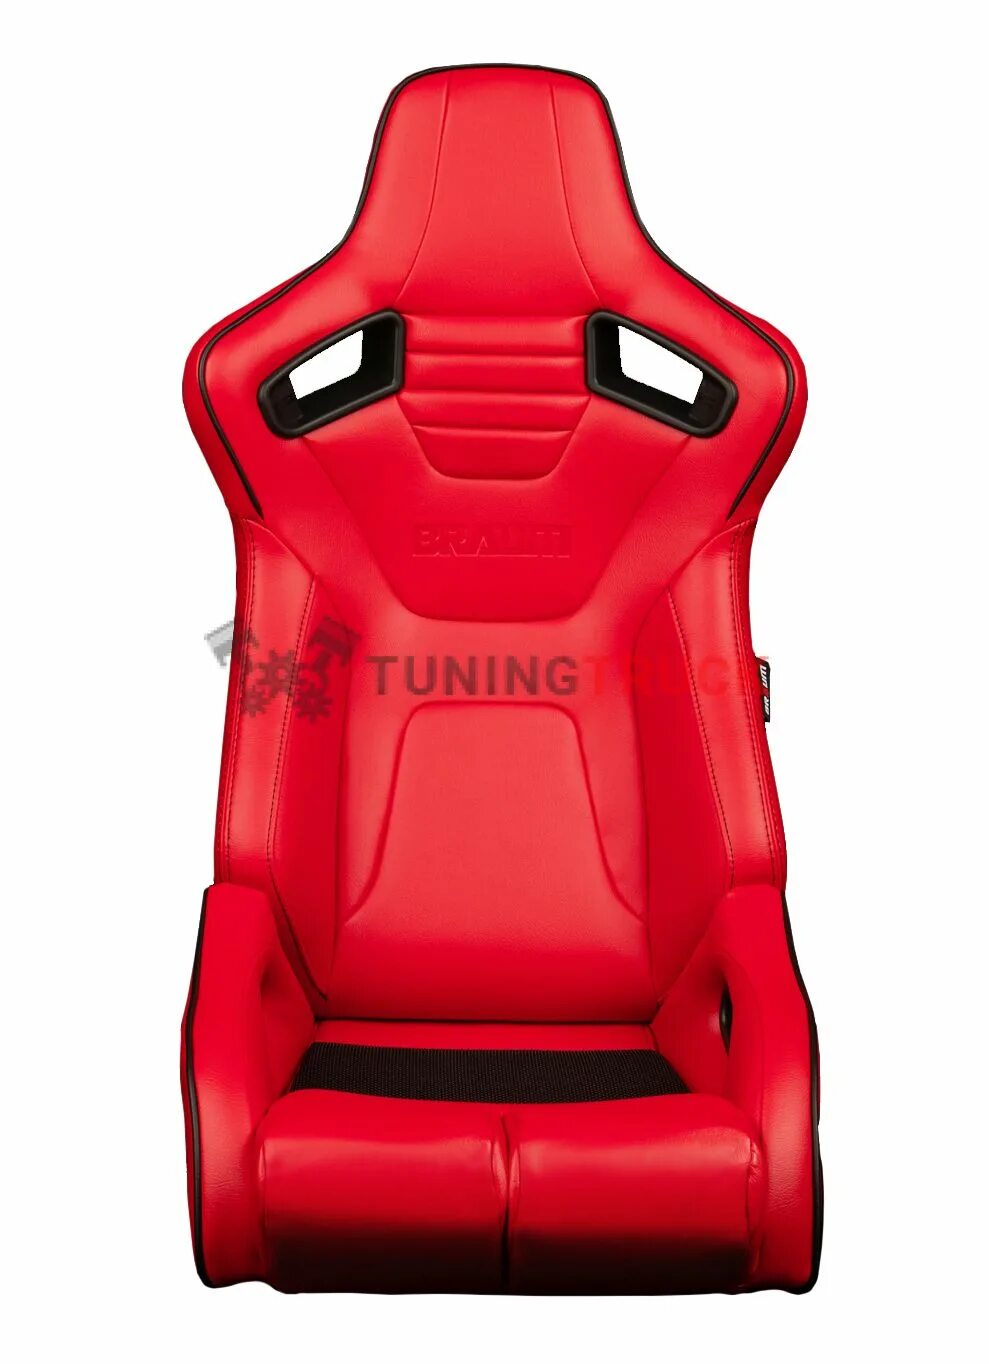 Купить спортивные сидения. VSD-1r Racing Seat. Racer 11578 красный кресло. Спортивное кресло. Анатомические сиденья.